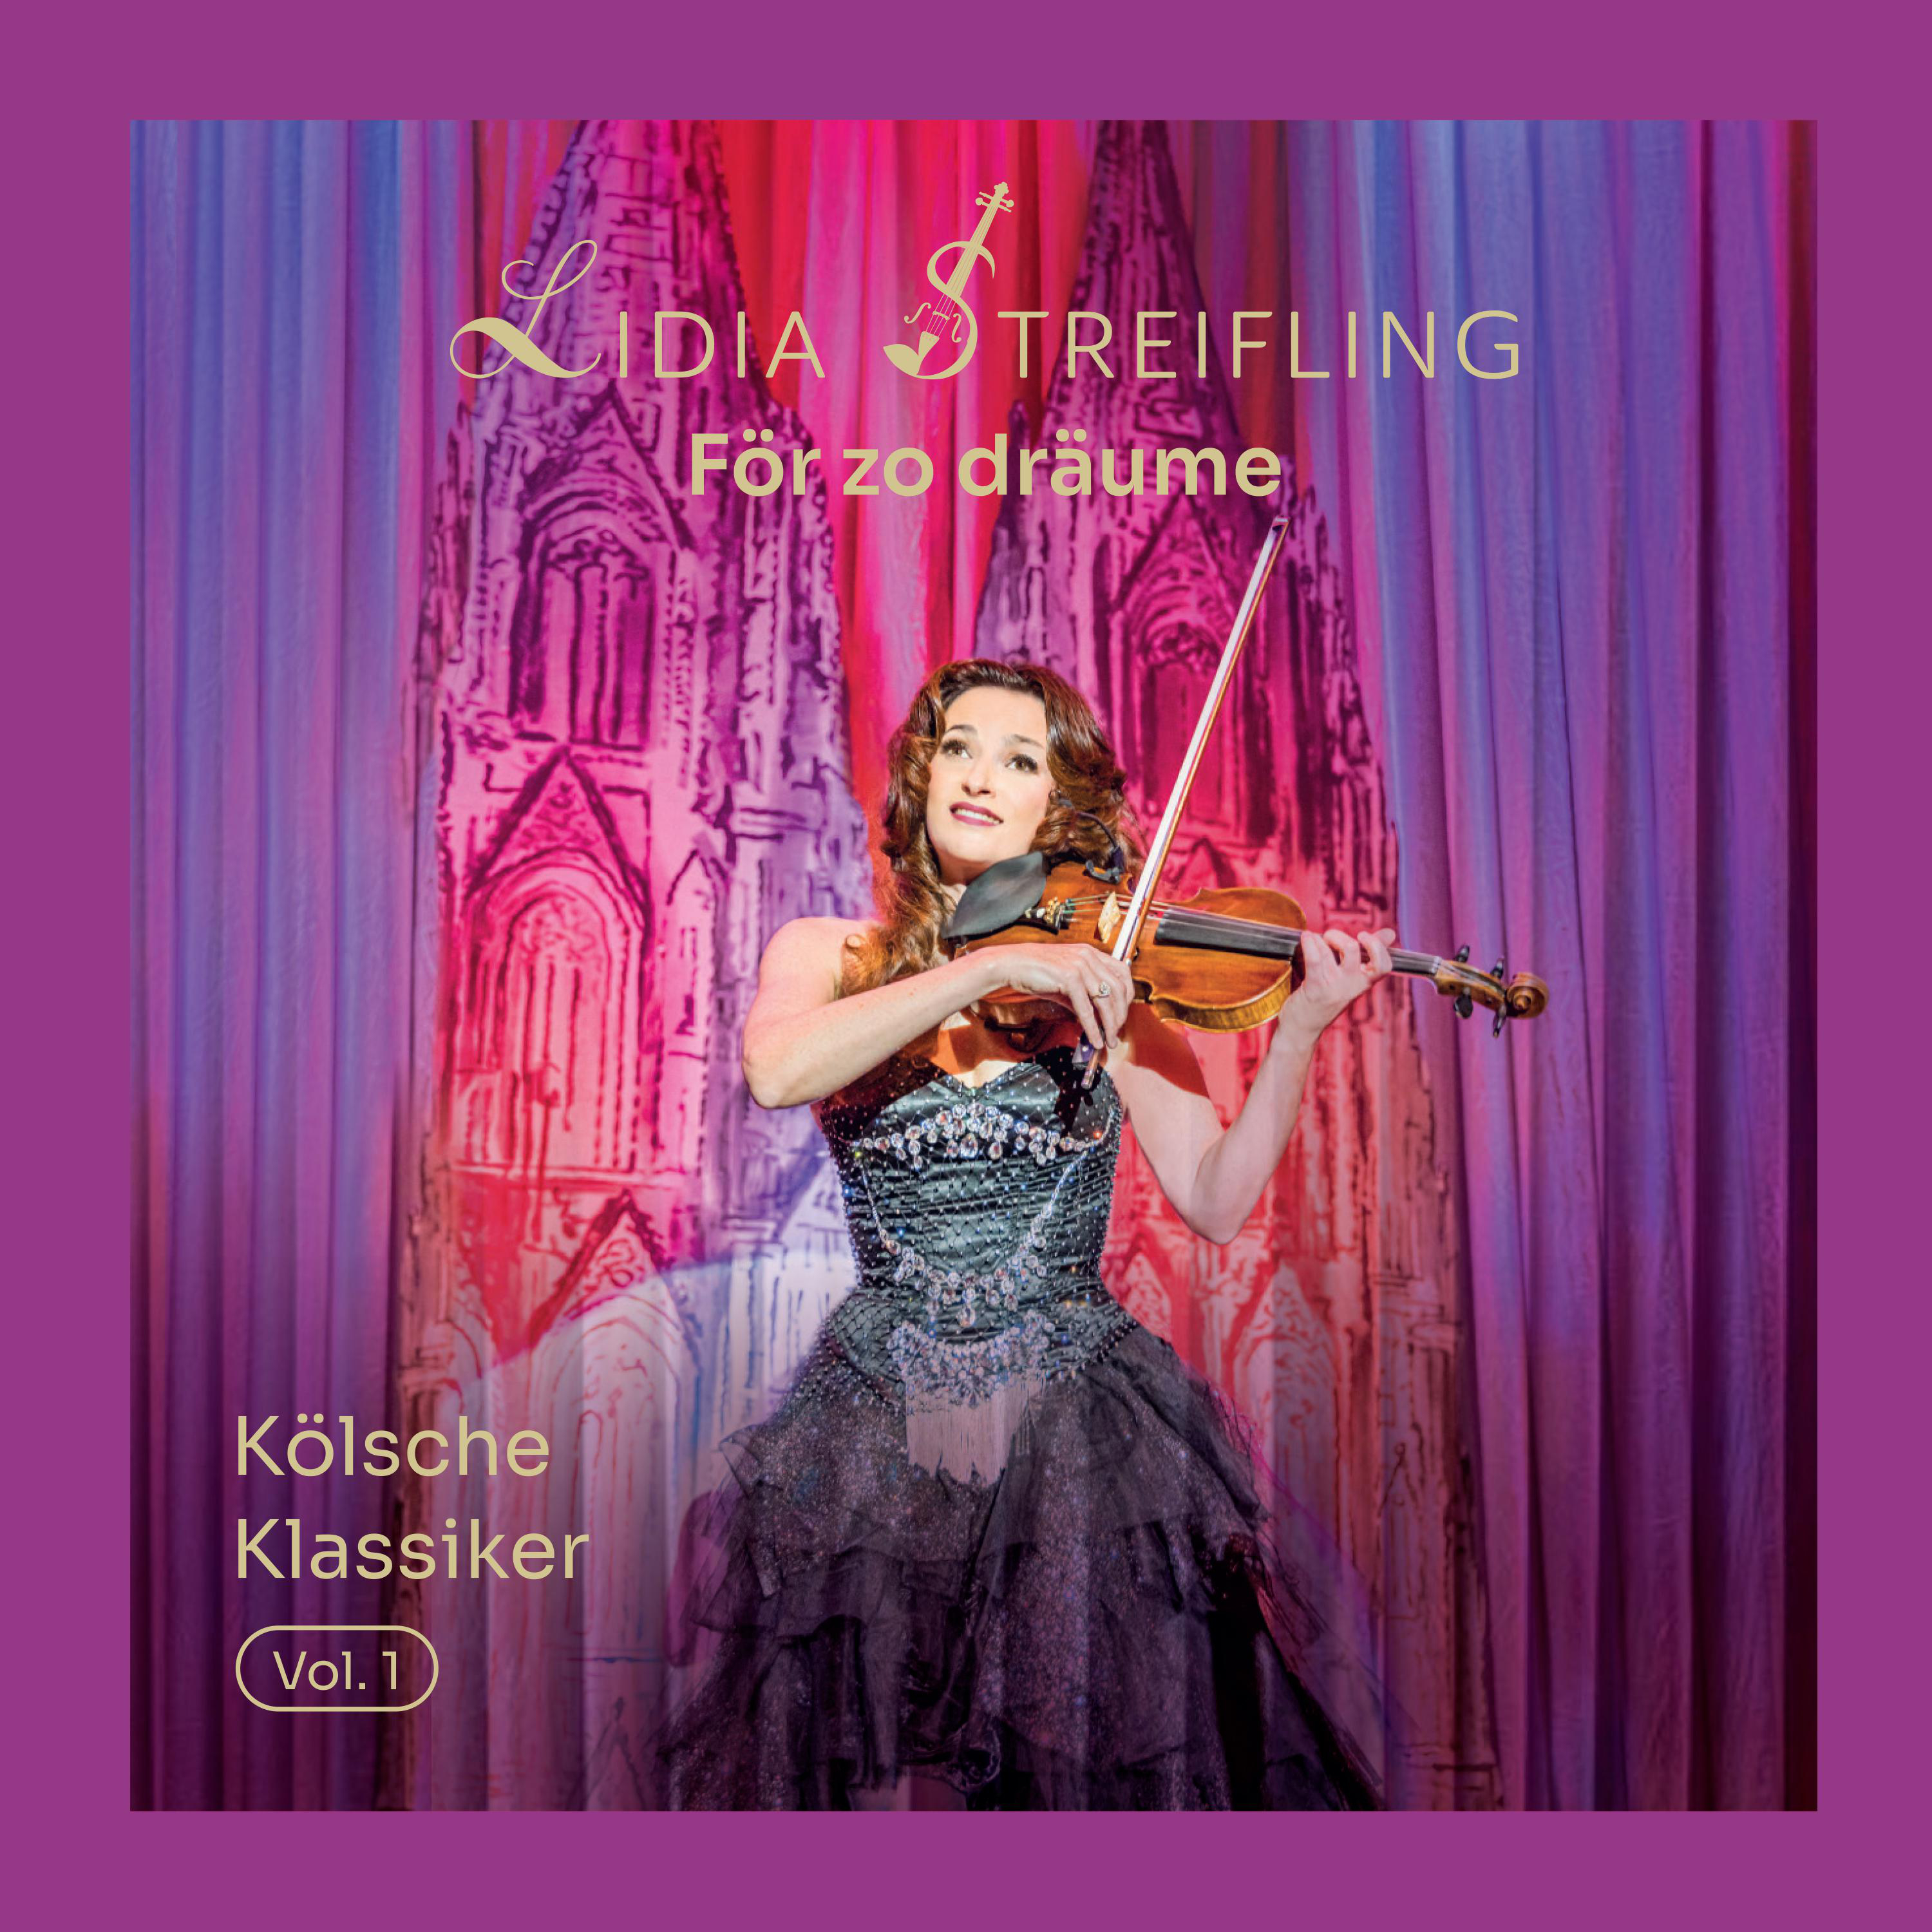 Lidia Streifling - Kölsche För Klassiker dräume zo Vol. - - (CD) 1